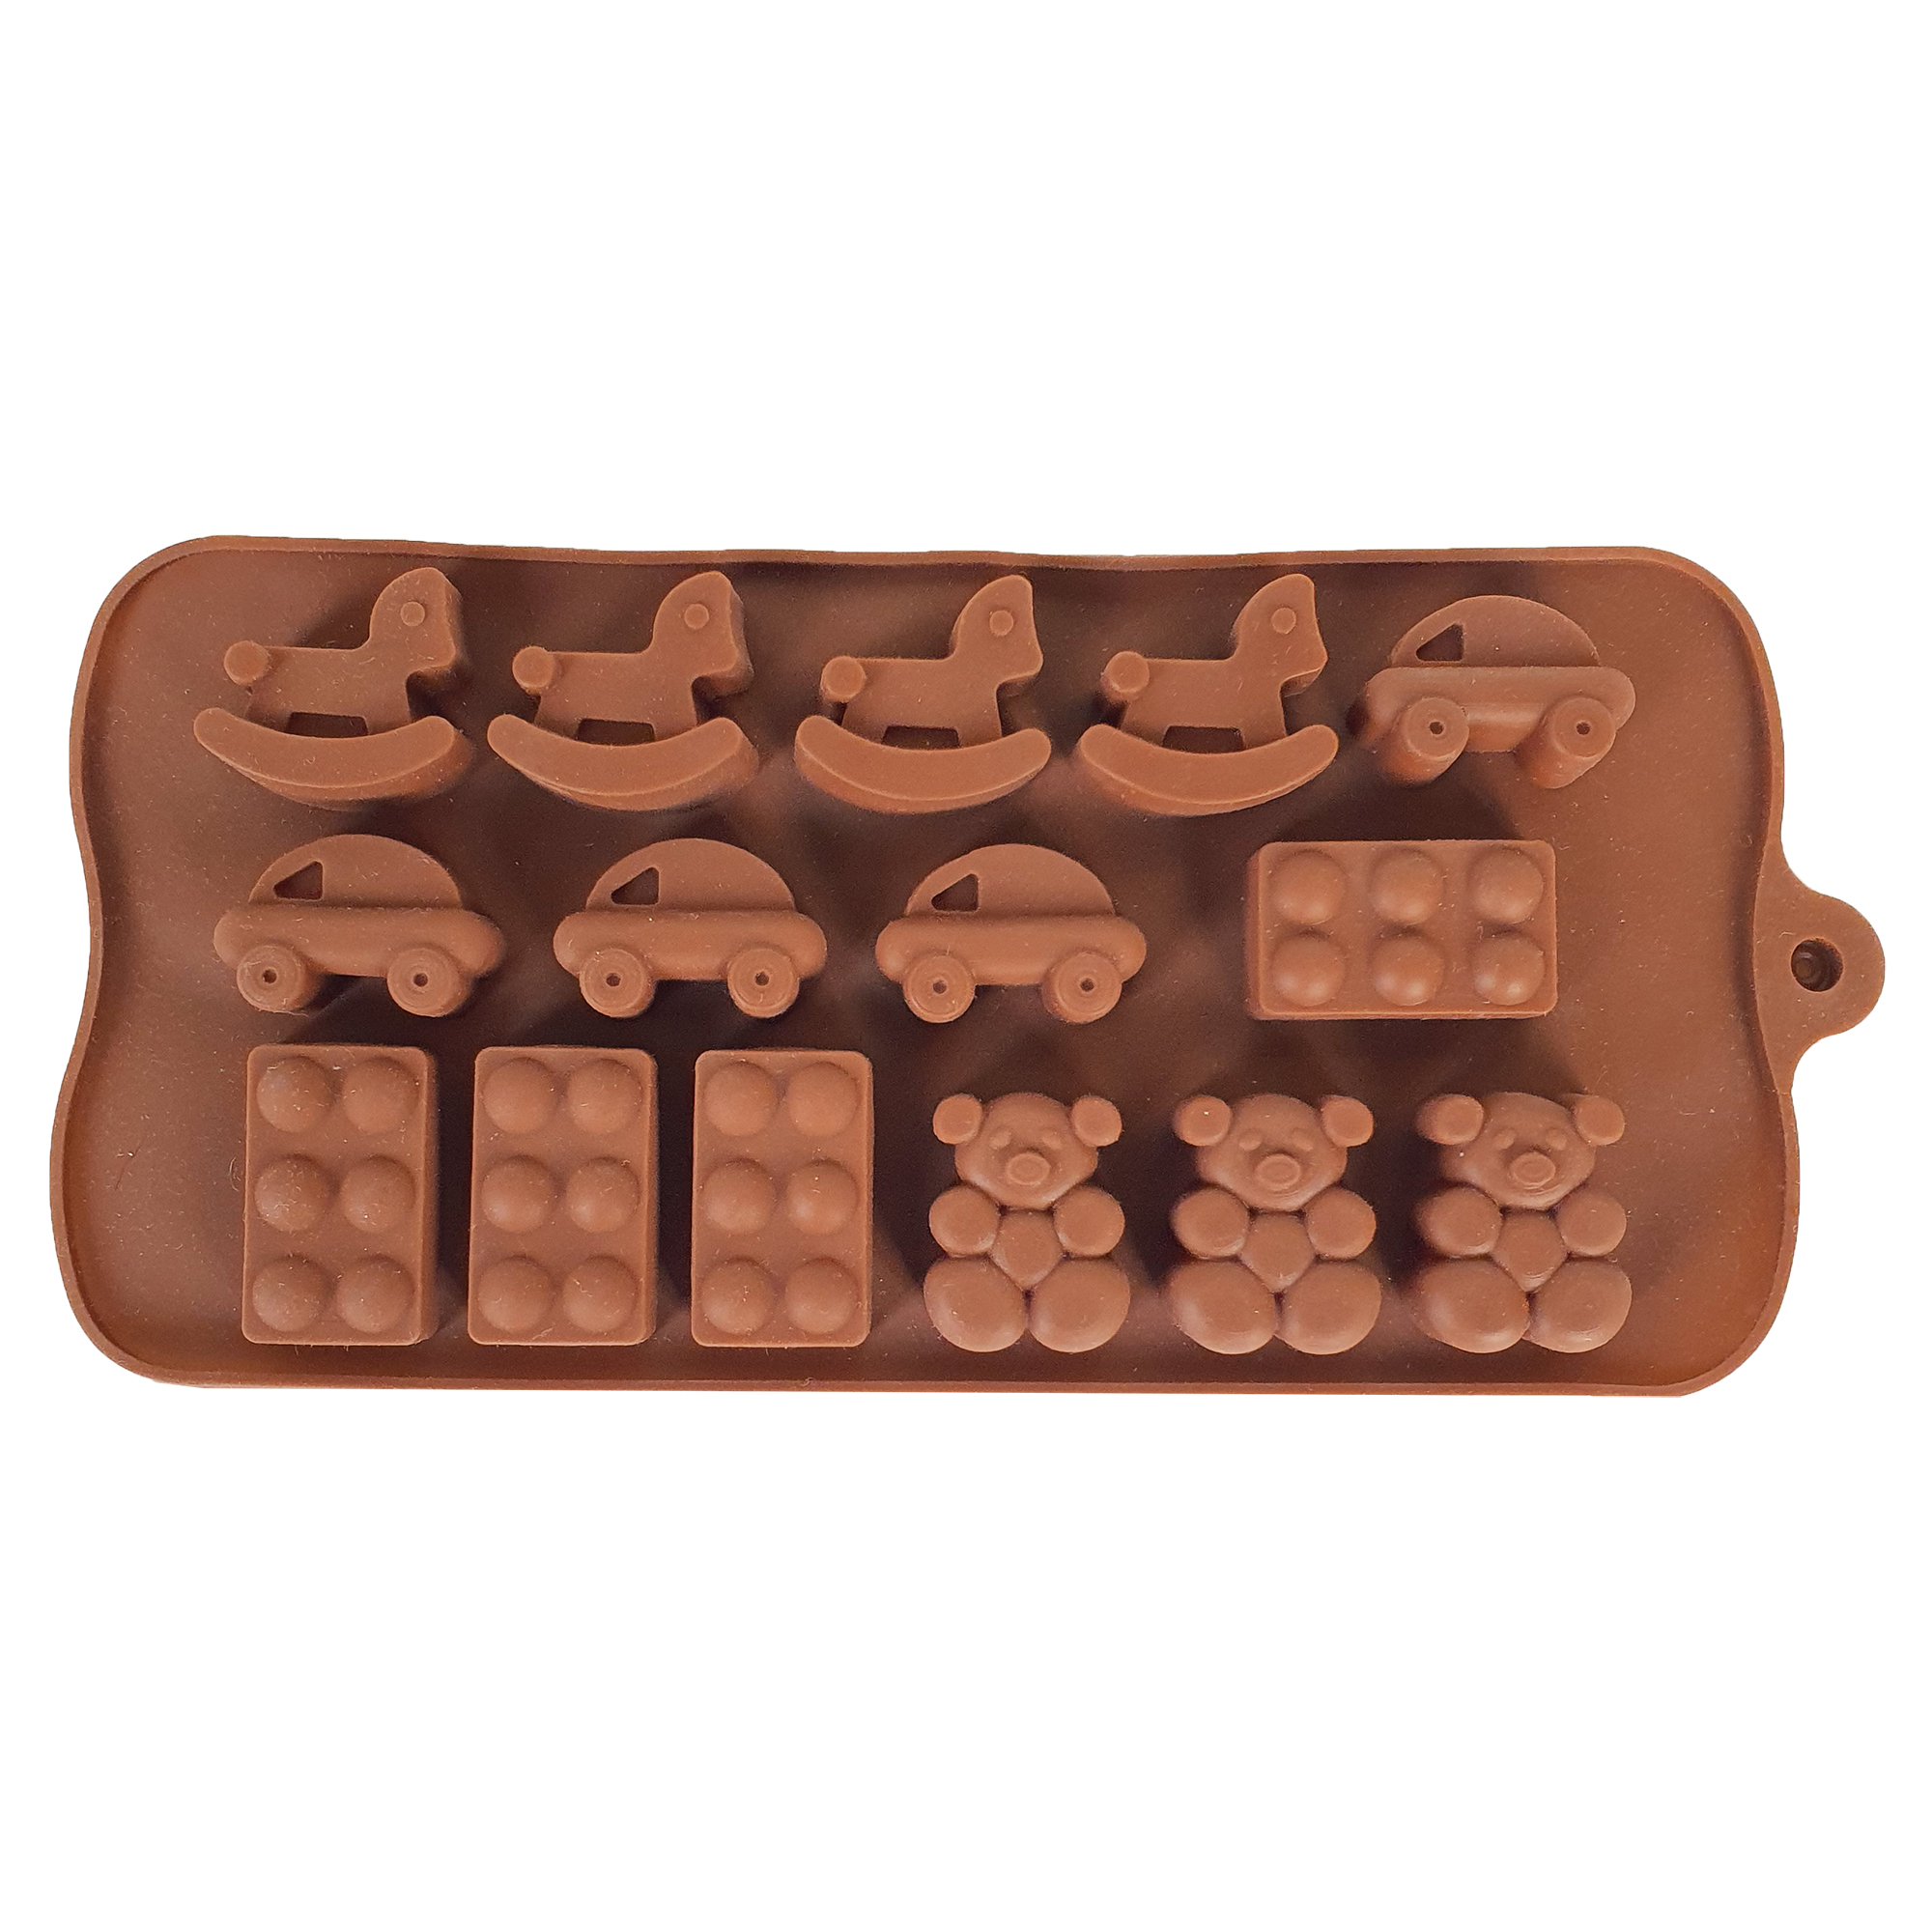 قالب شکلات طرح اسباب بازی کد Mhr-425